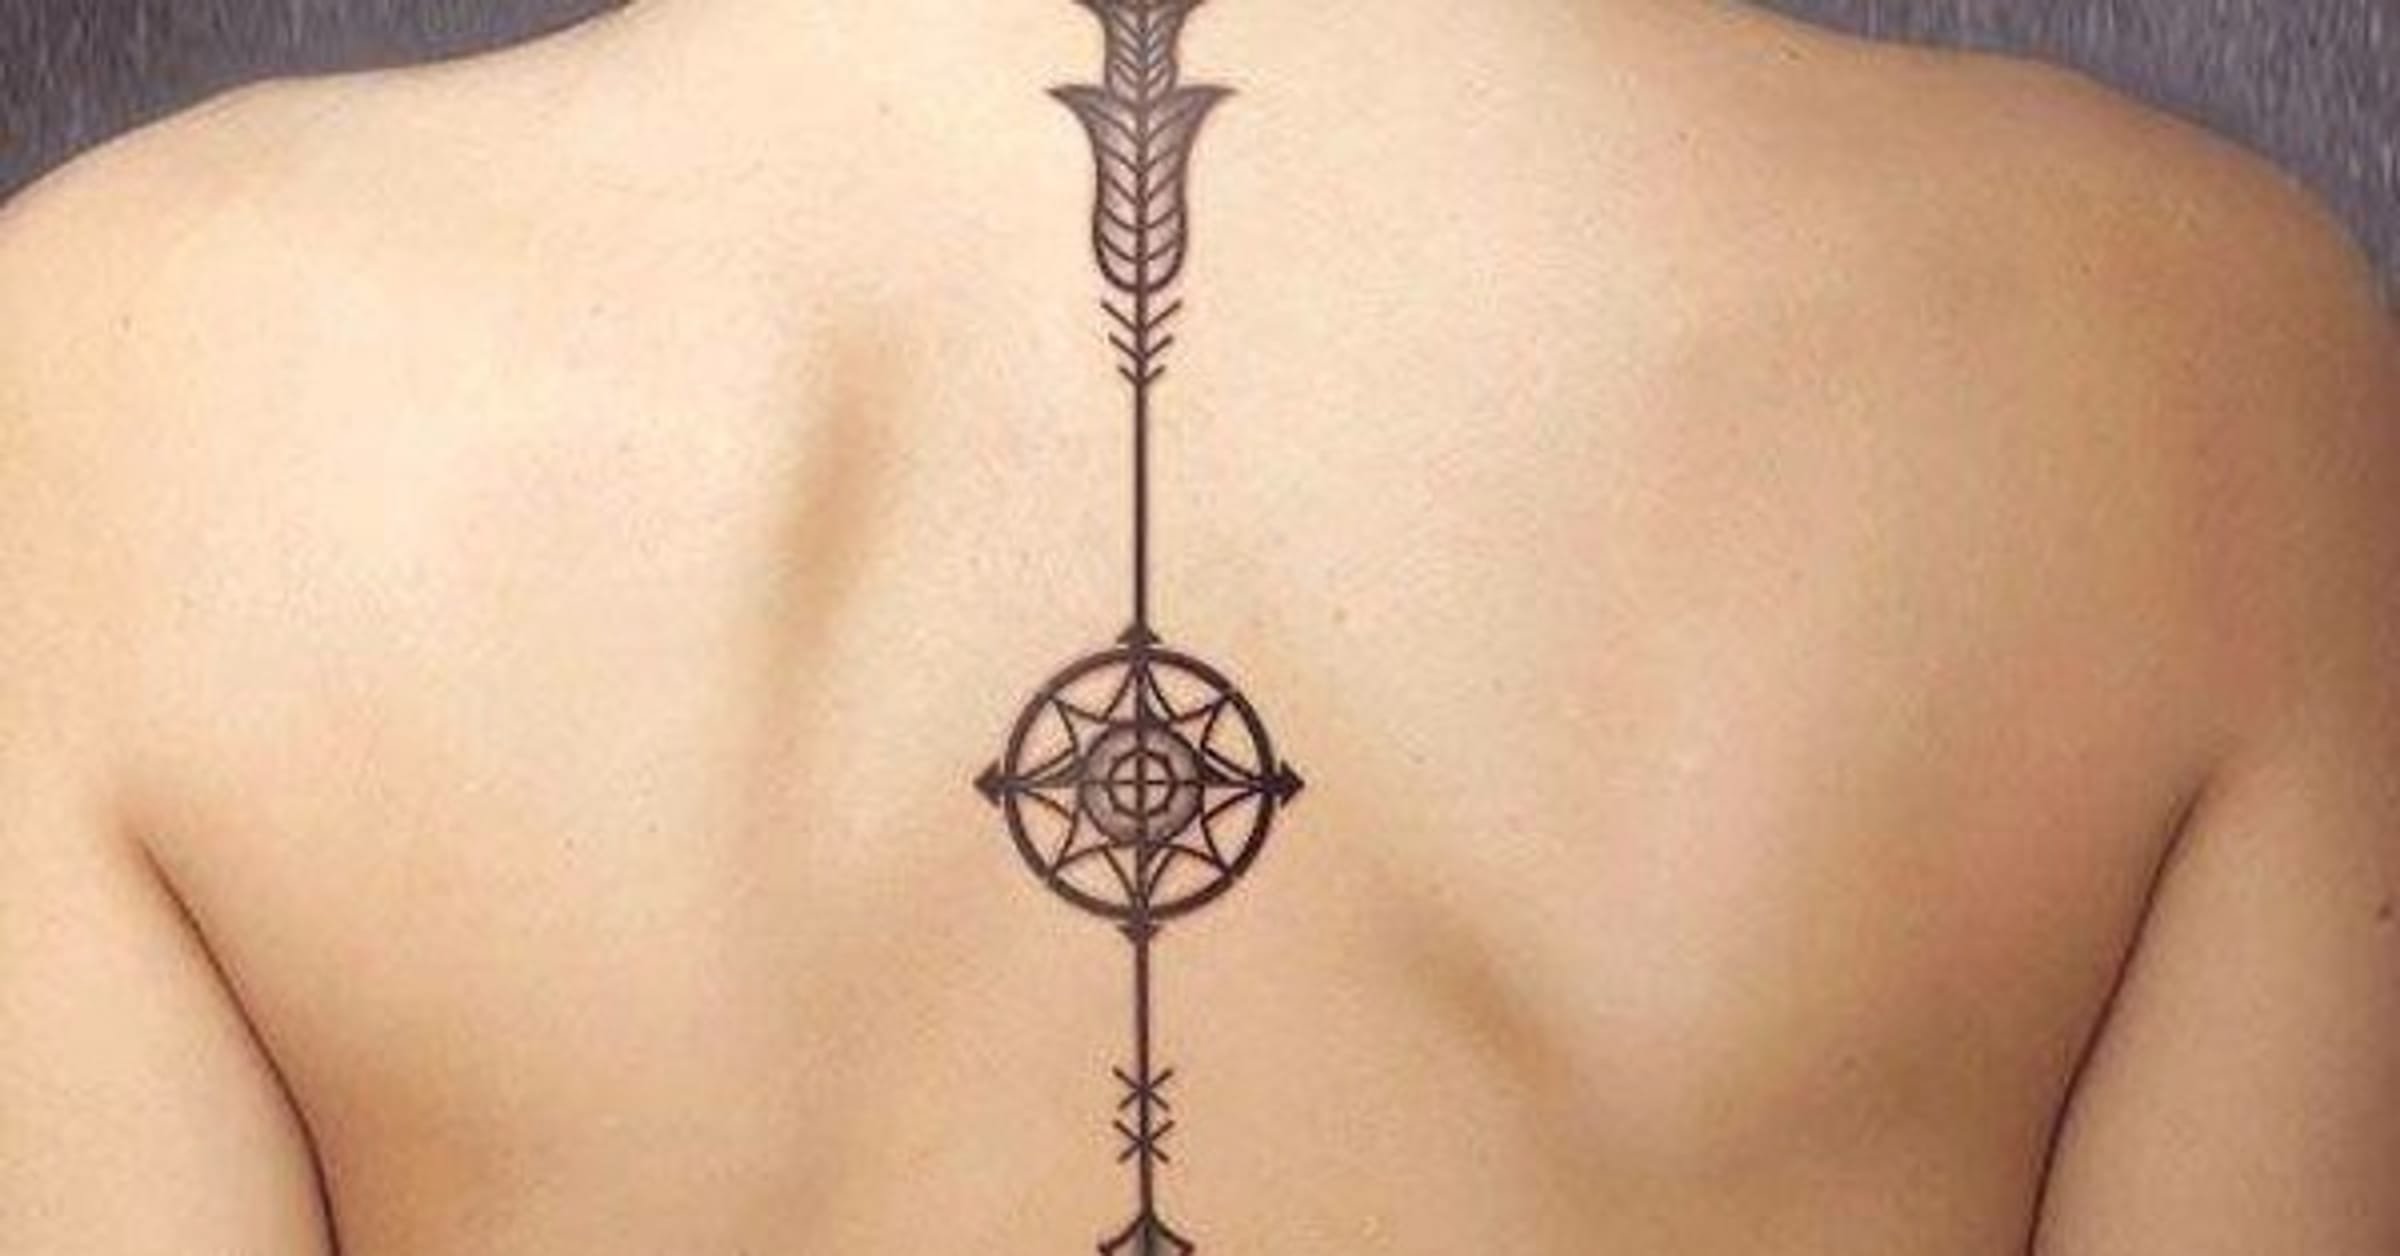 tribal upper back tattoos for women